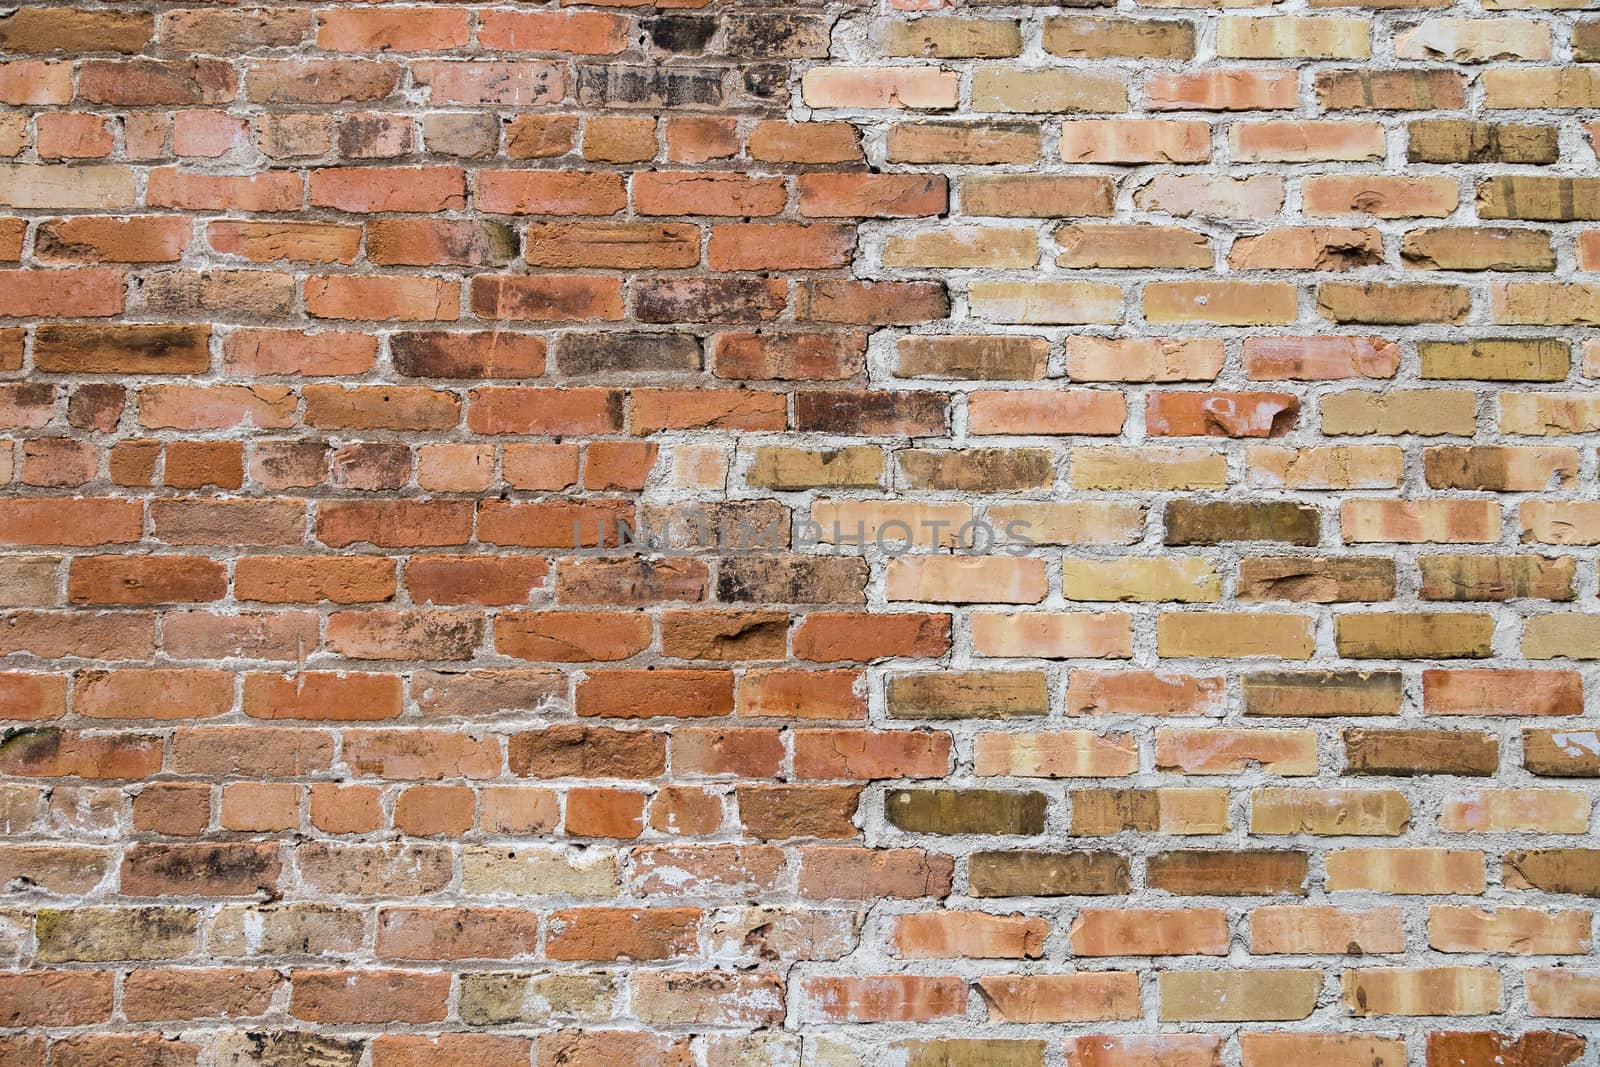 Weathered Brick Wall by rjamphoto